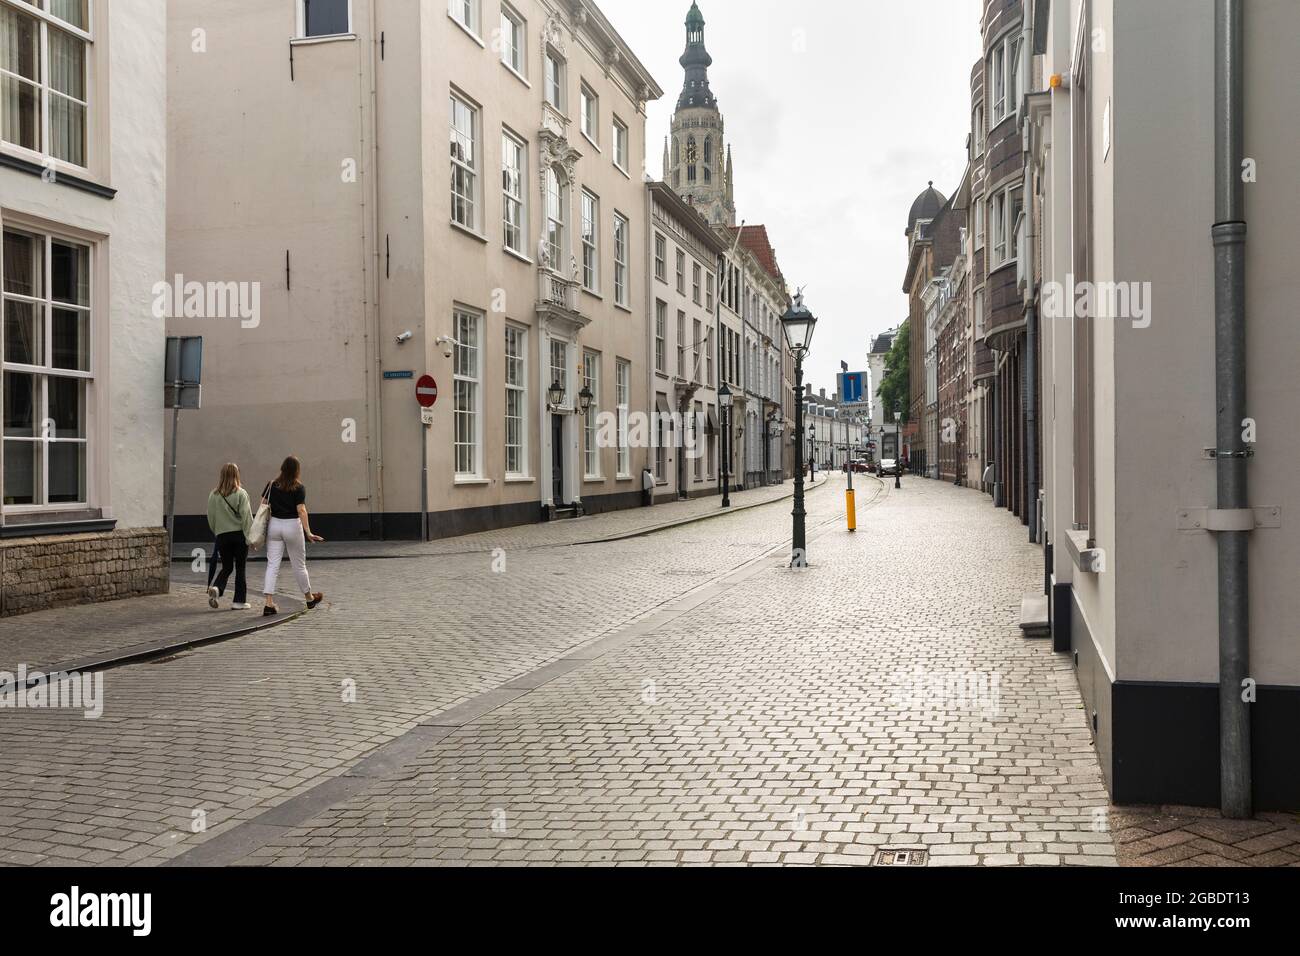 Breda, Niederlande 28. Juni 2021. Straße im Stadtzentrum mit alten historischen Gebäuden mit hellen Fassaden, einem Bürgersteig, einer Kirche und Menschen Wal Stockfoto